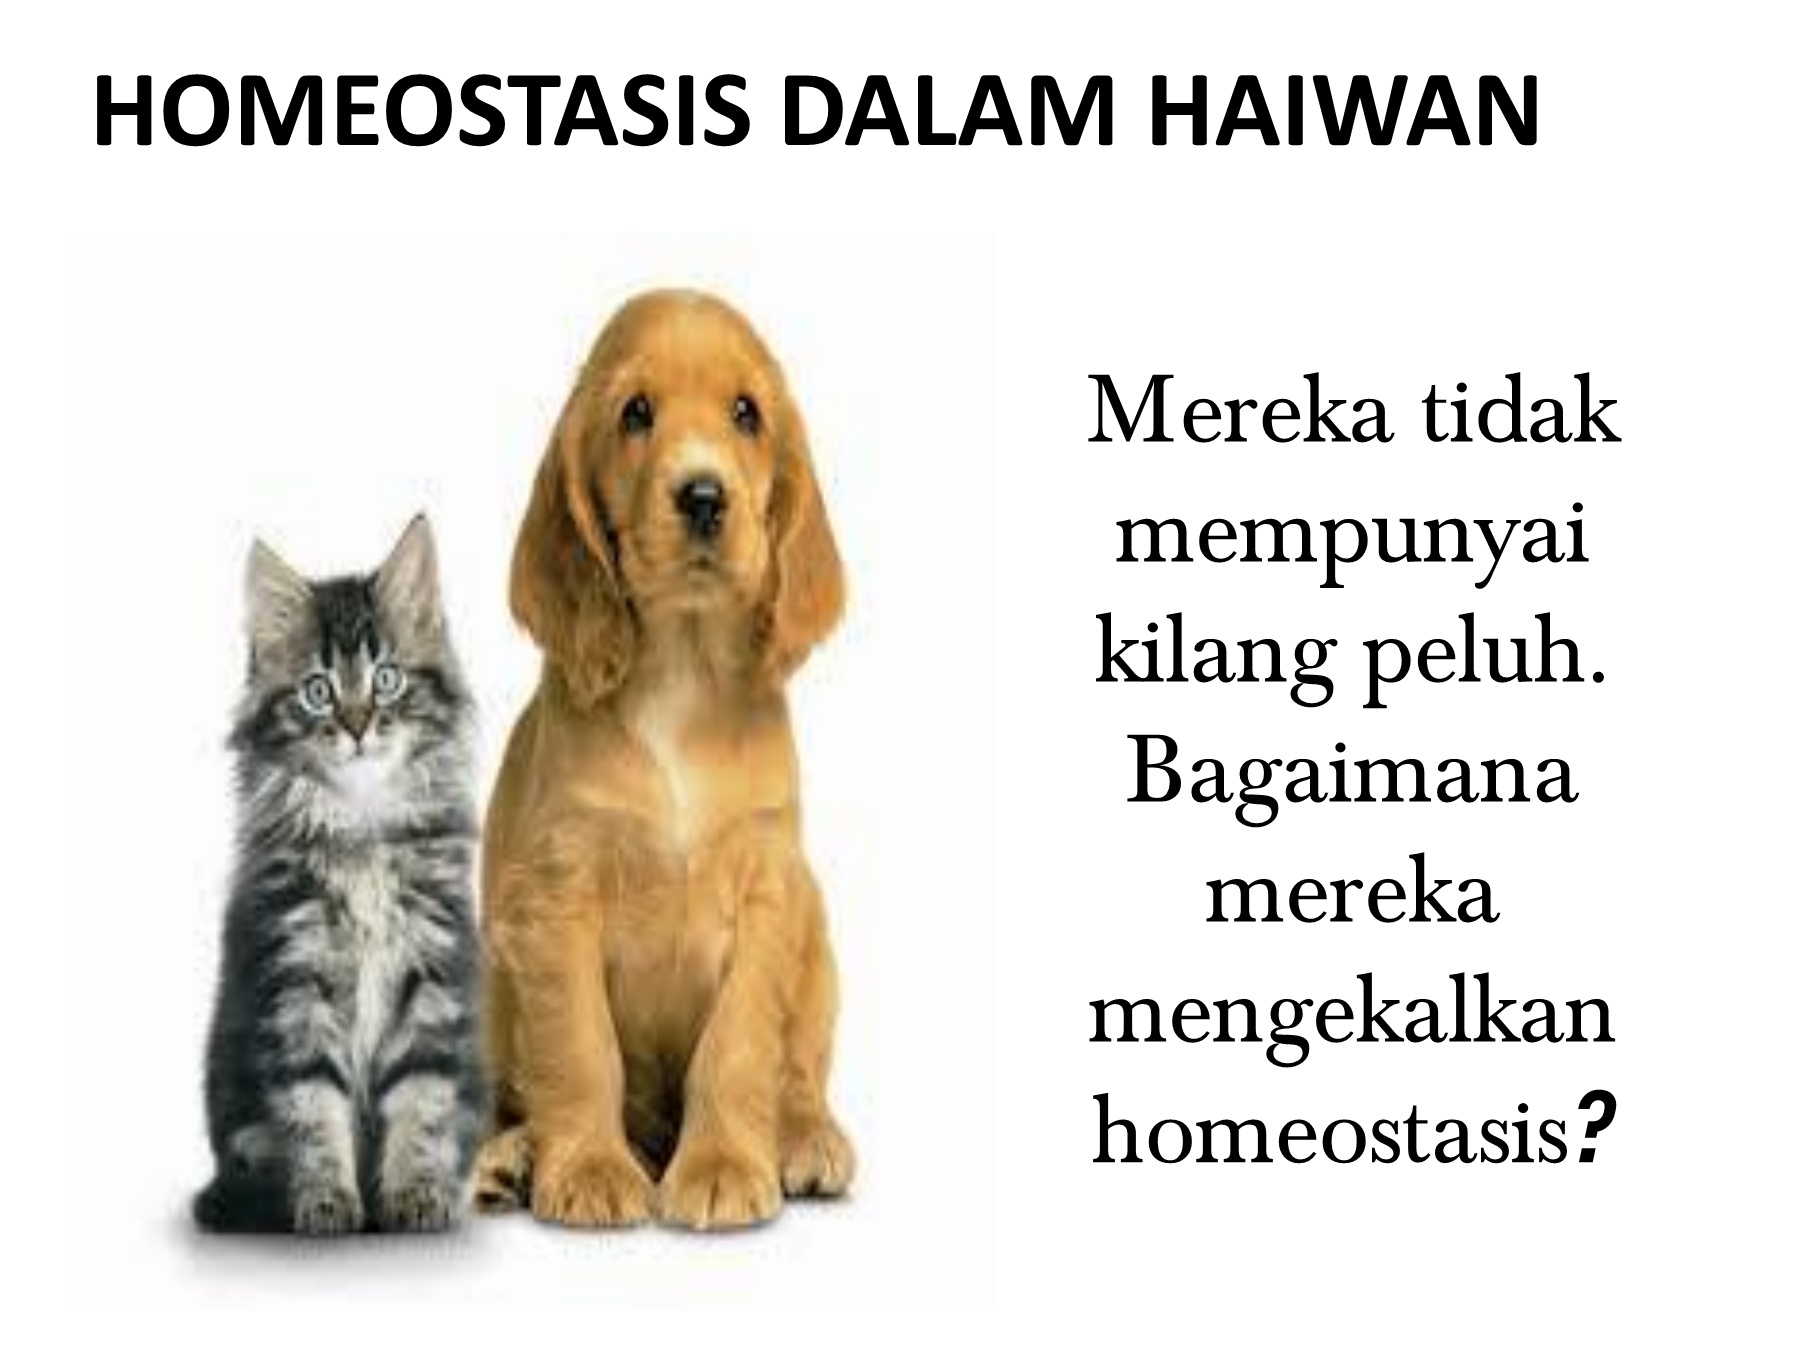 Homeostasis dalam haiwan